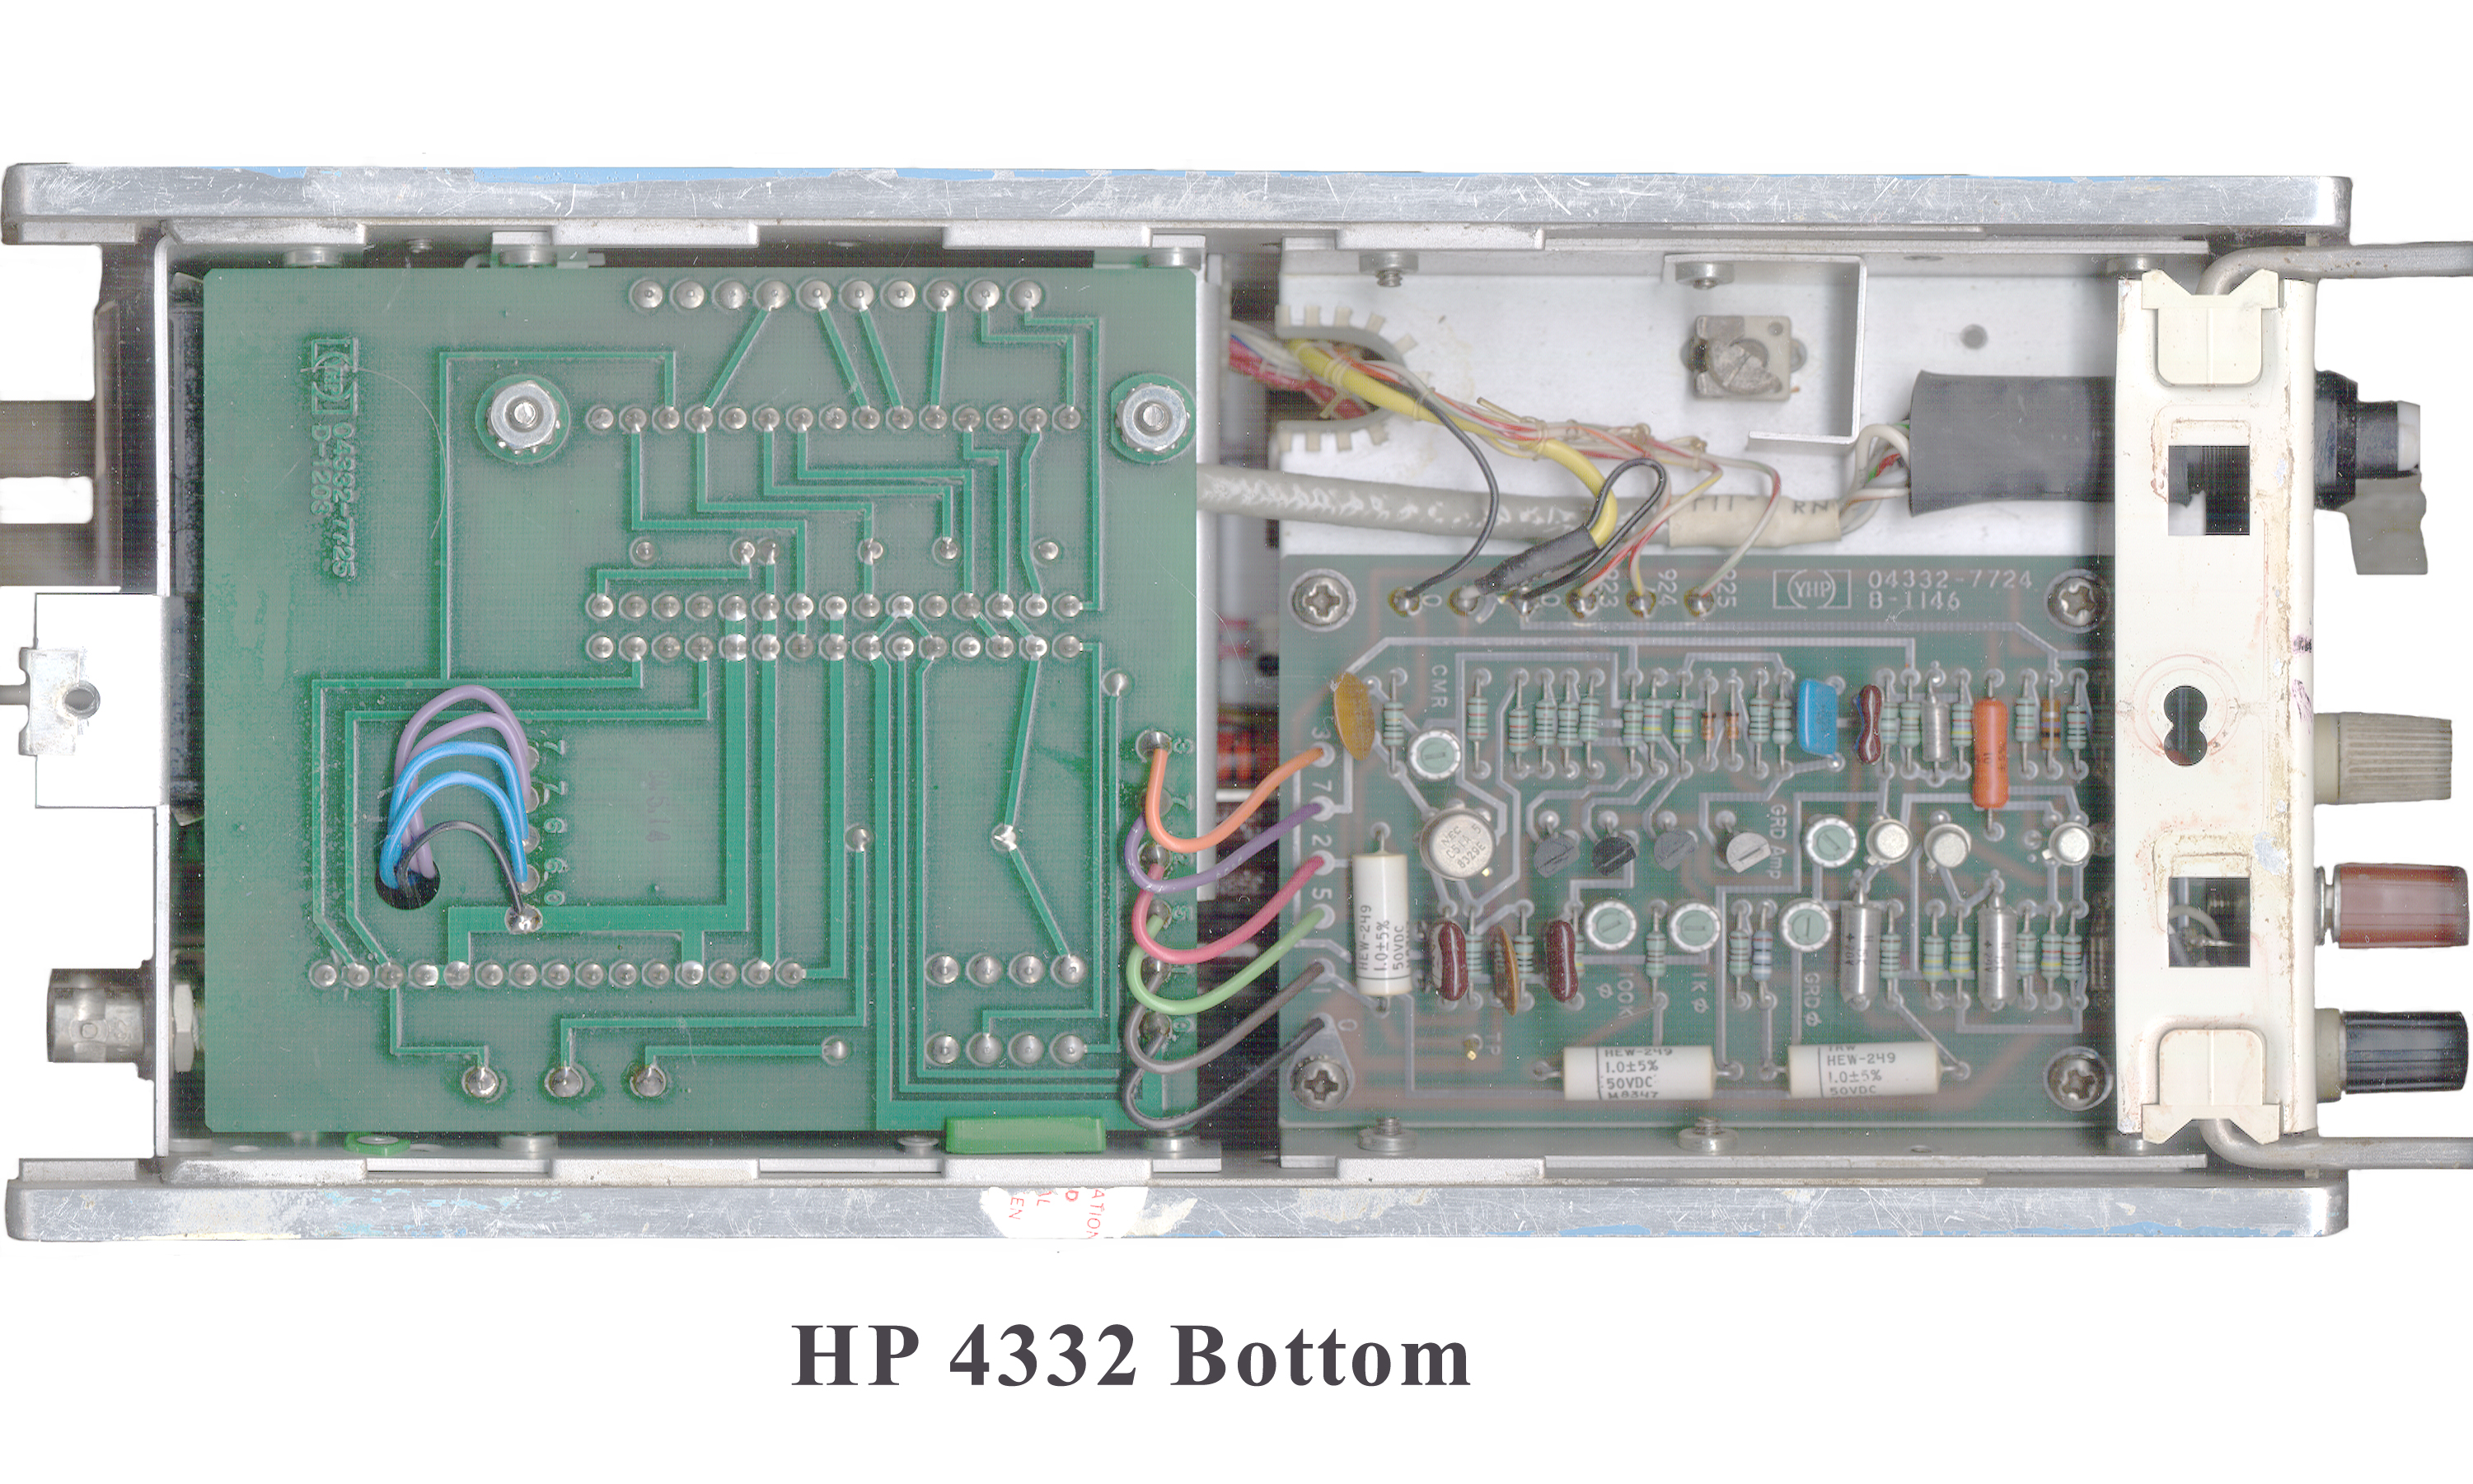 HP 4332 LCR Meter